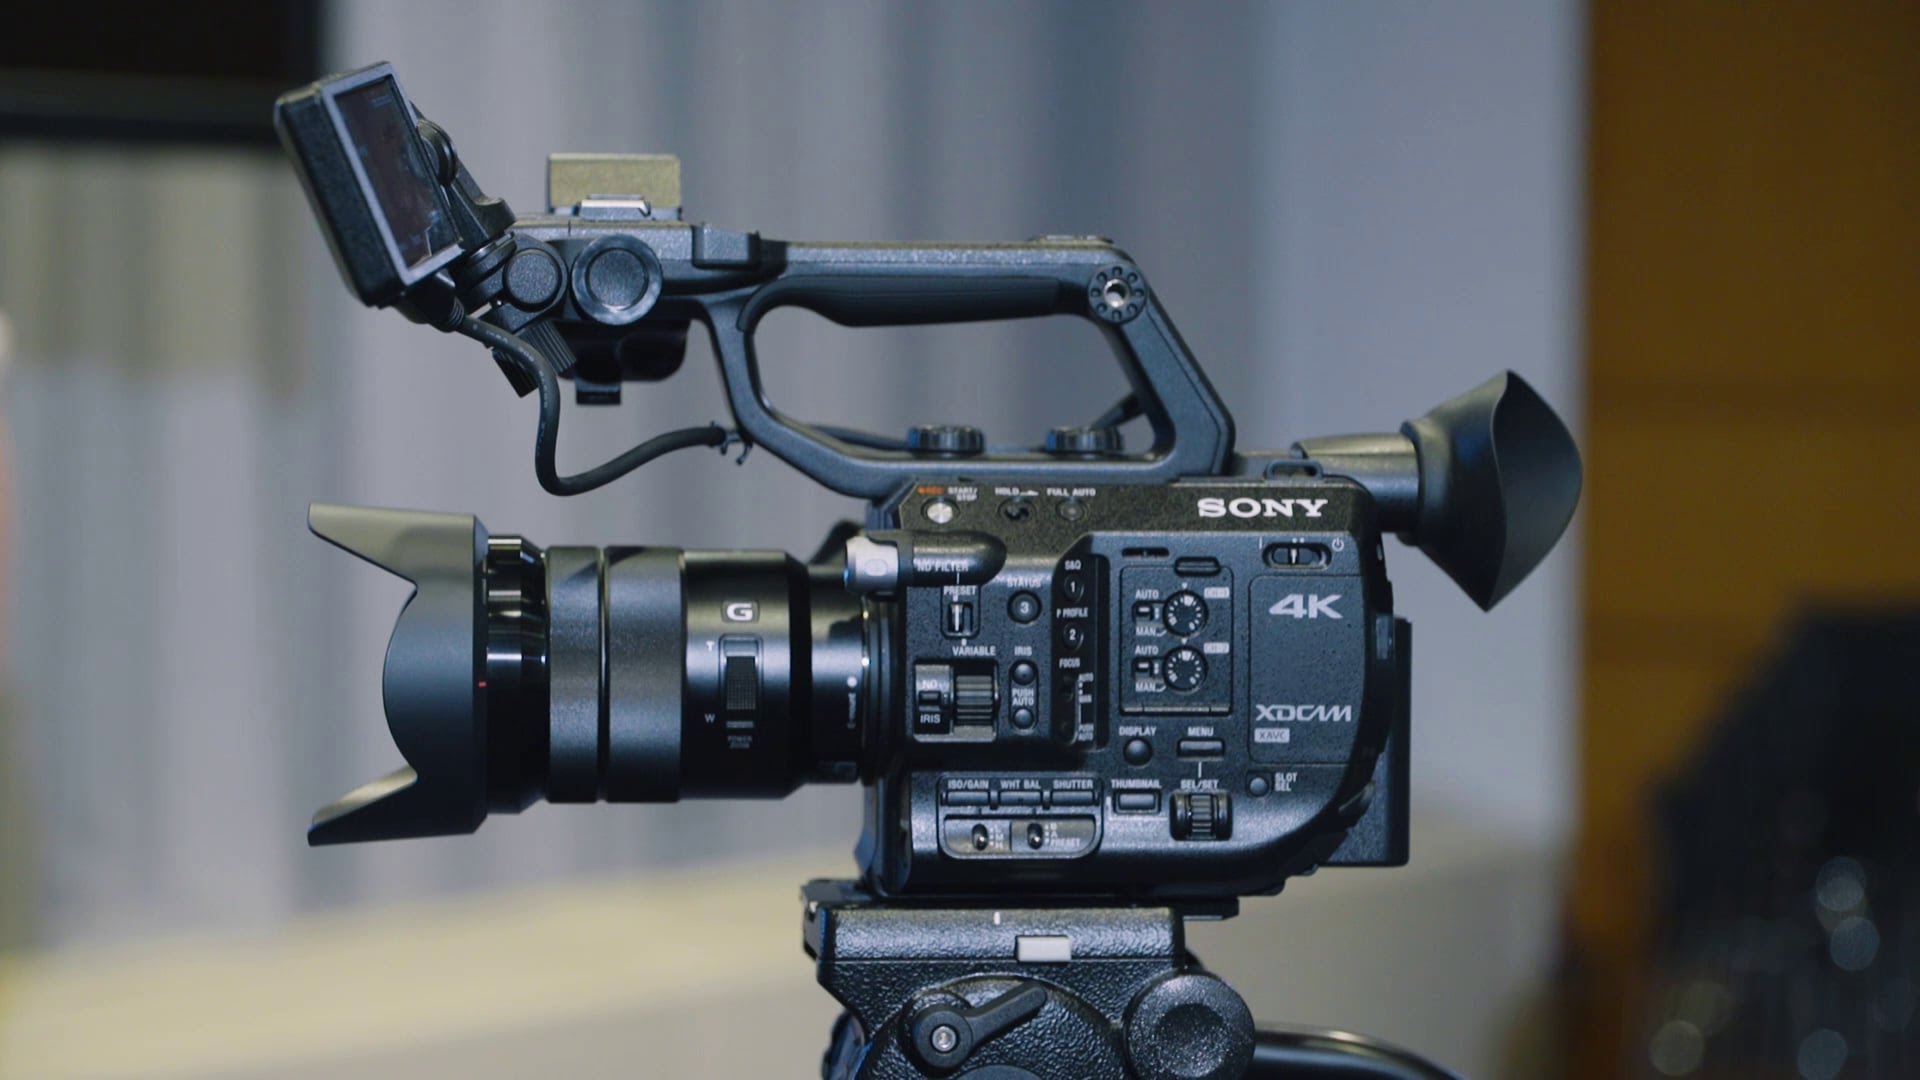 tarde enaguas enchufe PXW-FS5: la nueva cámara profesional compacta 4K Super 35 de Sony